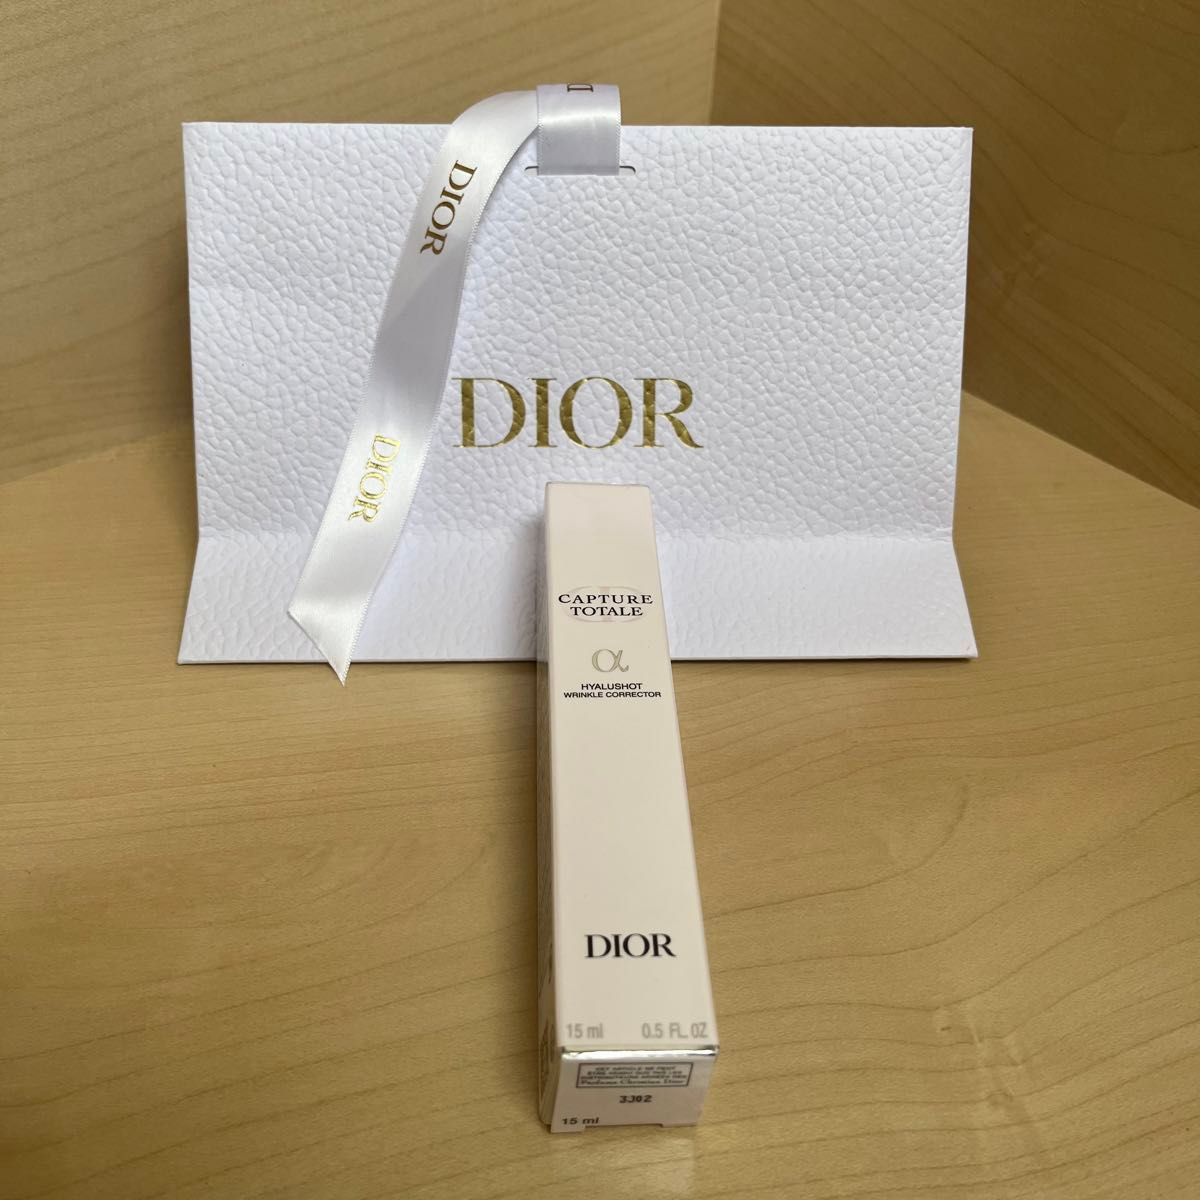 クリスチャンディオール Dior カプチュールトータルヒアルショット 15ml [646086]